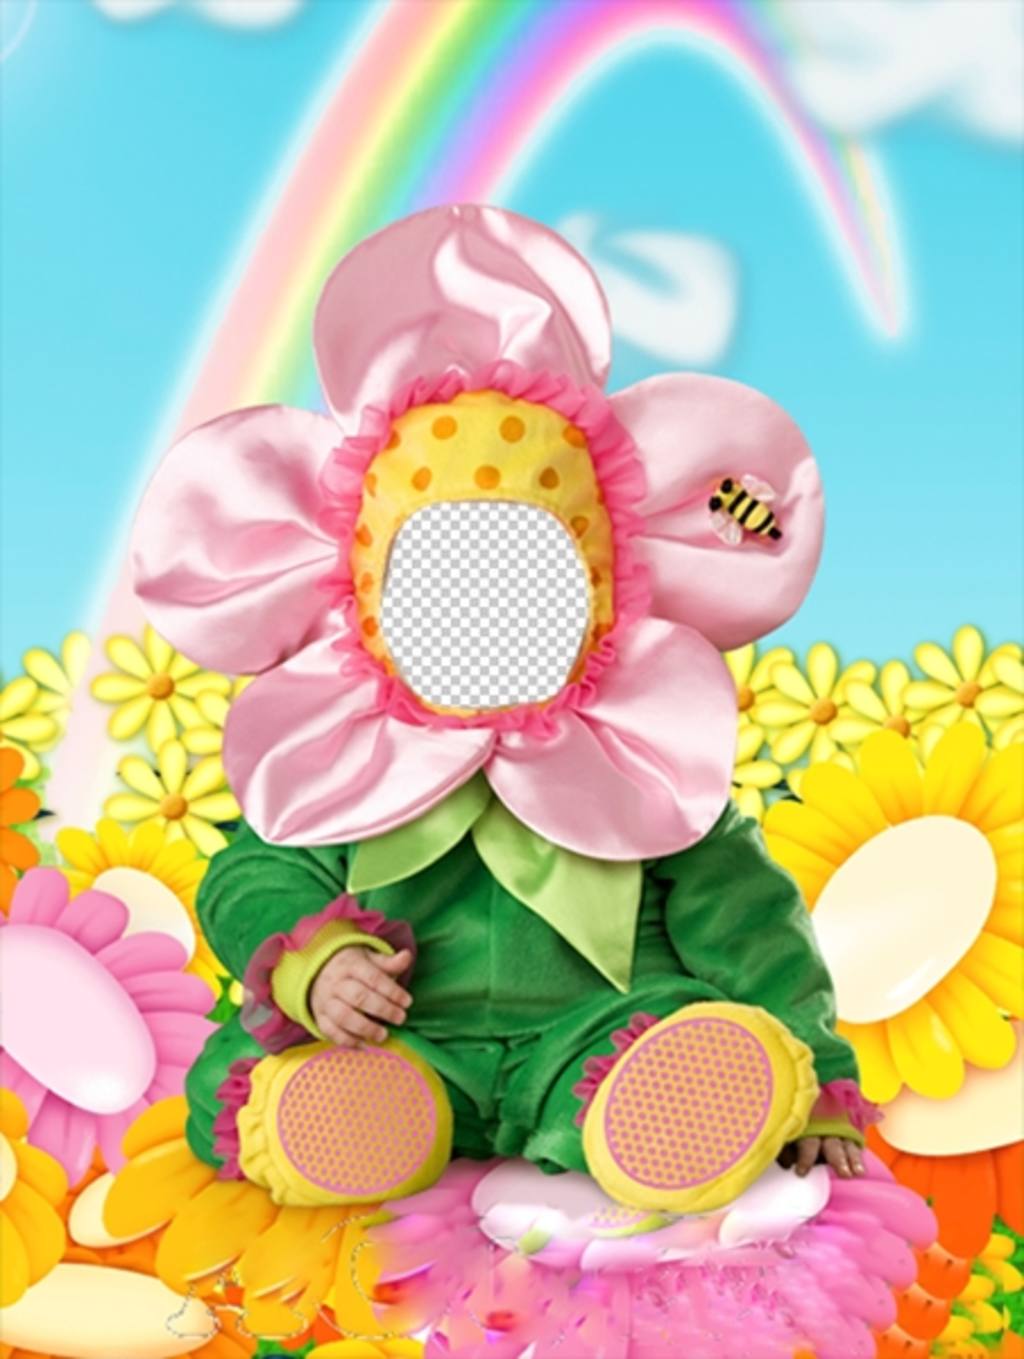 Photomontage de mettre votre visage dans un costume avec bébé costume de fleur dune fleur pour les enfants avec un arc en ciel, que vous pouvez facilement modifier toute photo et vous voir avec le costume virtuel drôle. Essayez avec la photo de votre enfant et définit le..